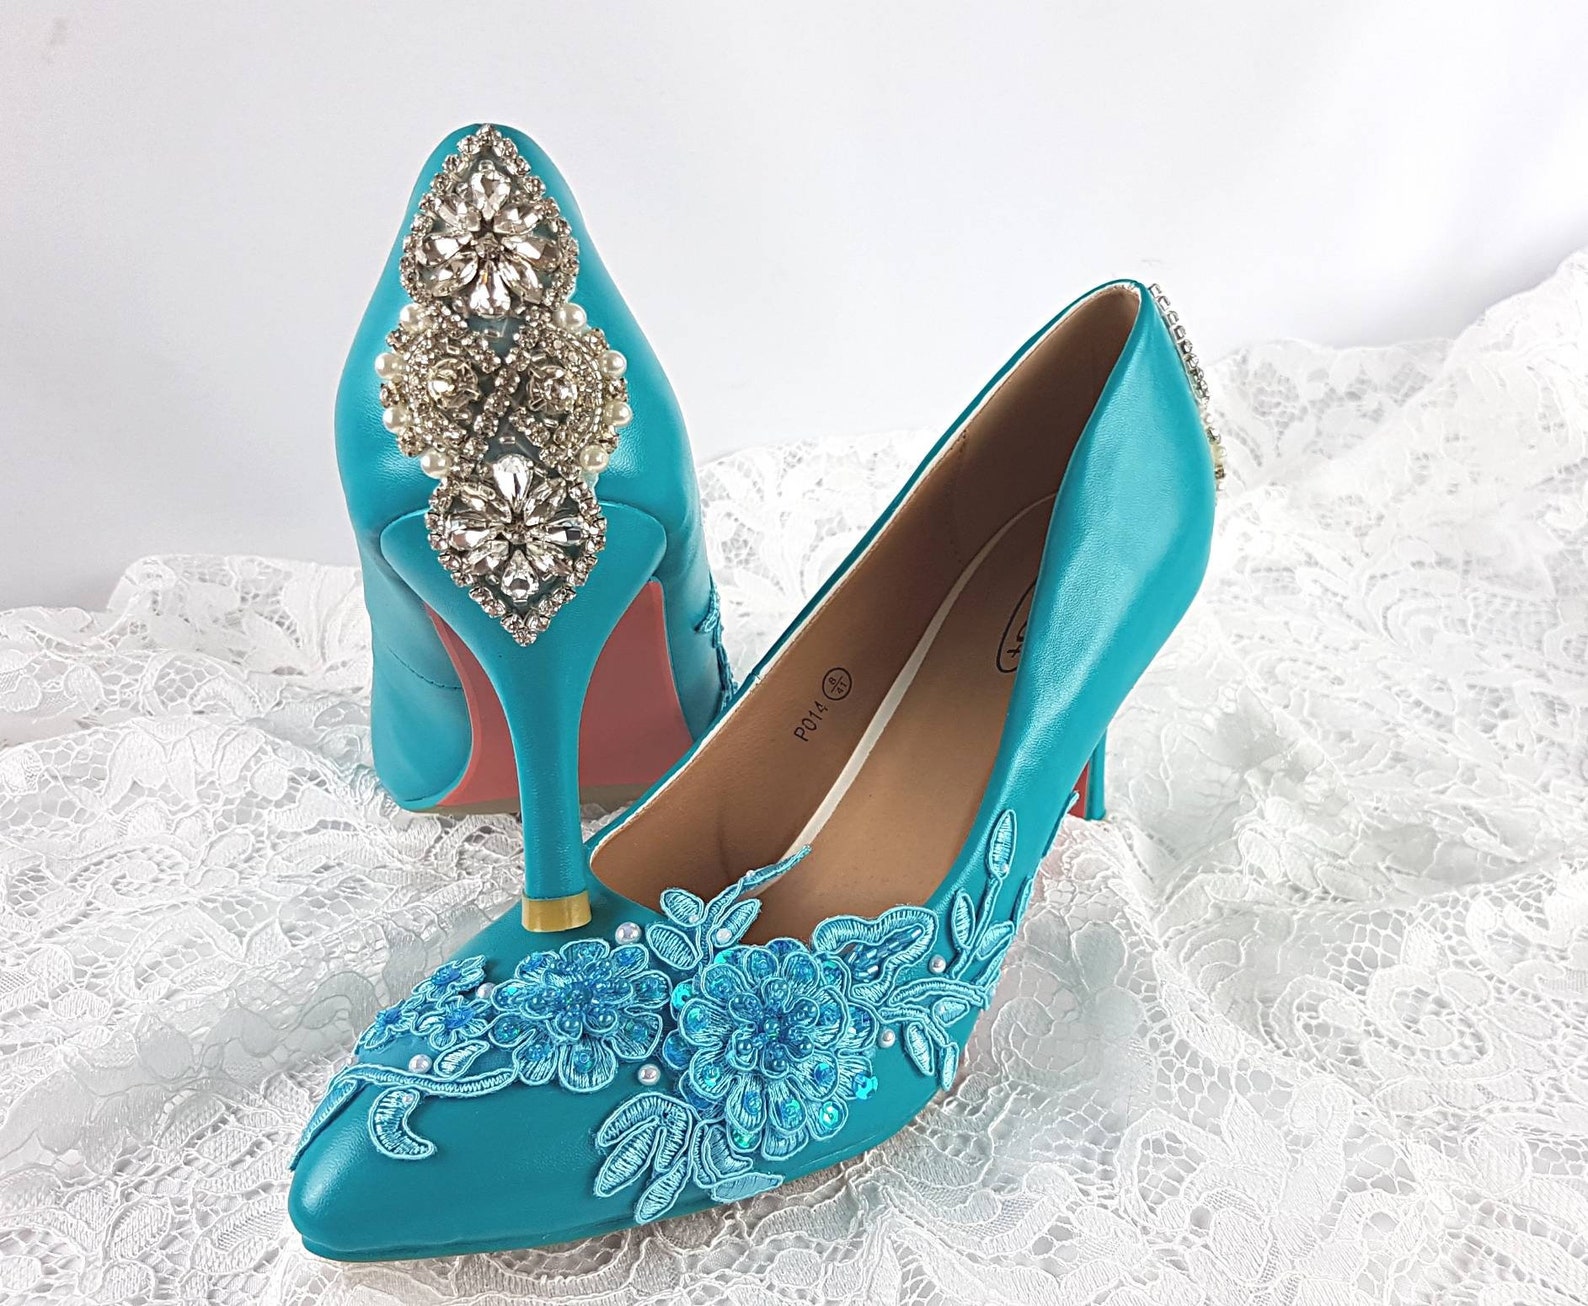 Wedding Shoes Turquoise Lace Bling Wedding Shoes Turquoise - Etsy